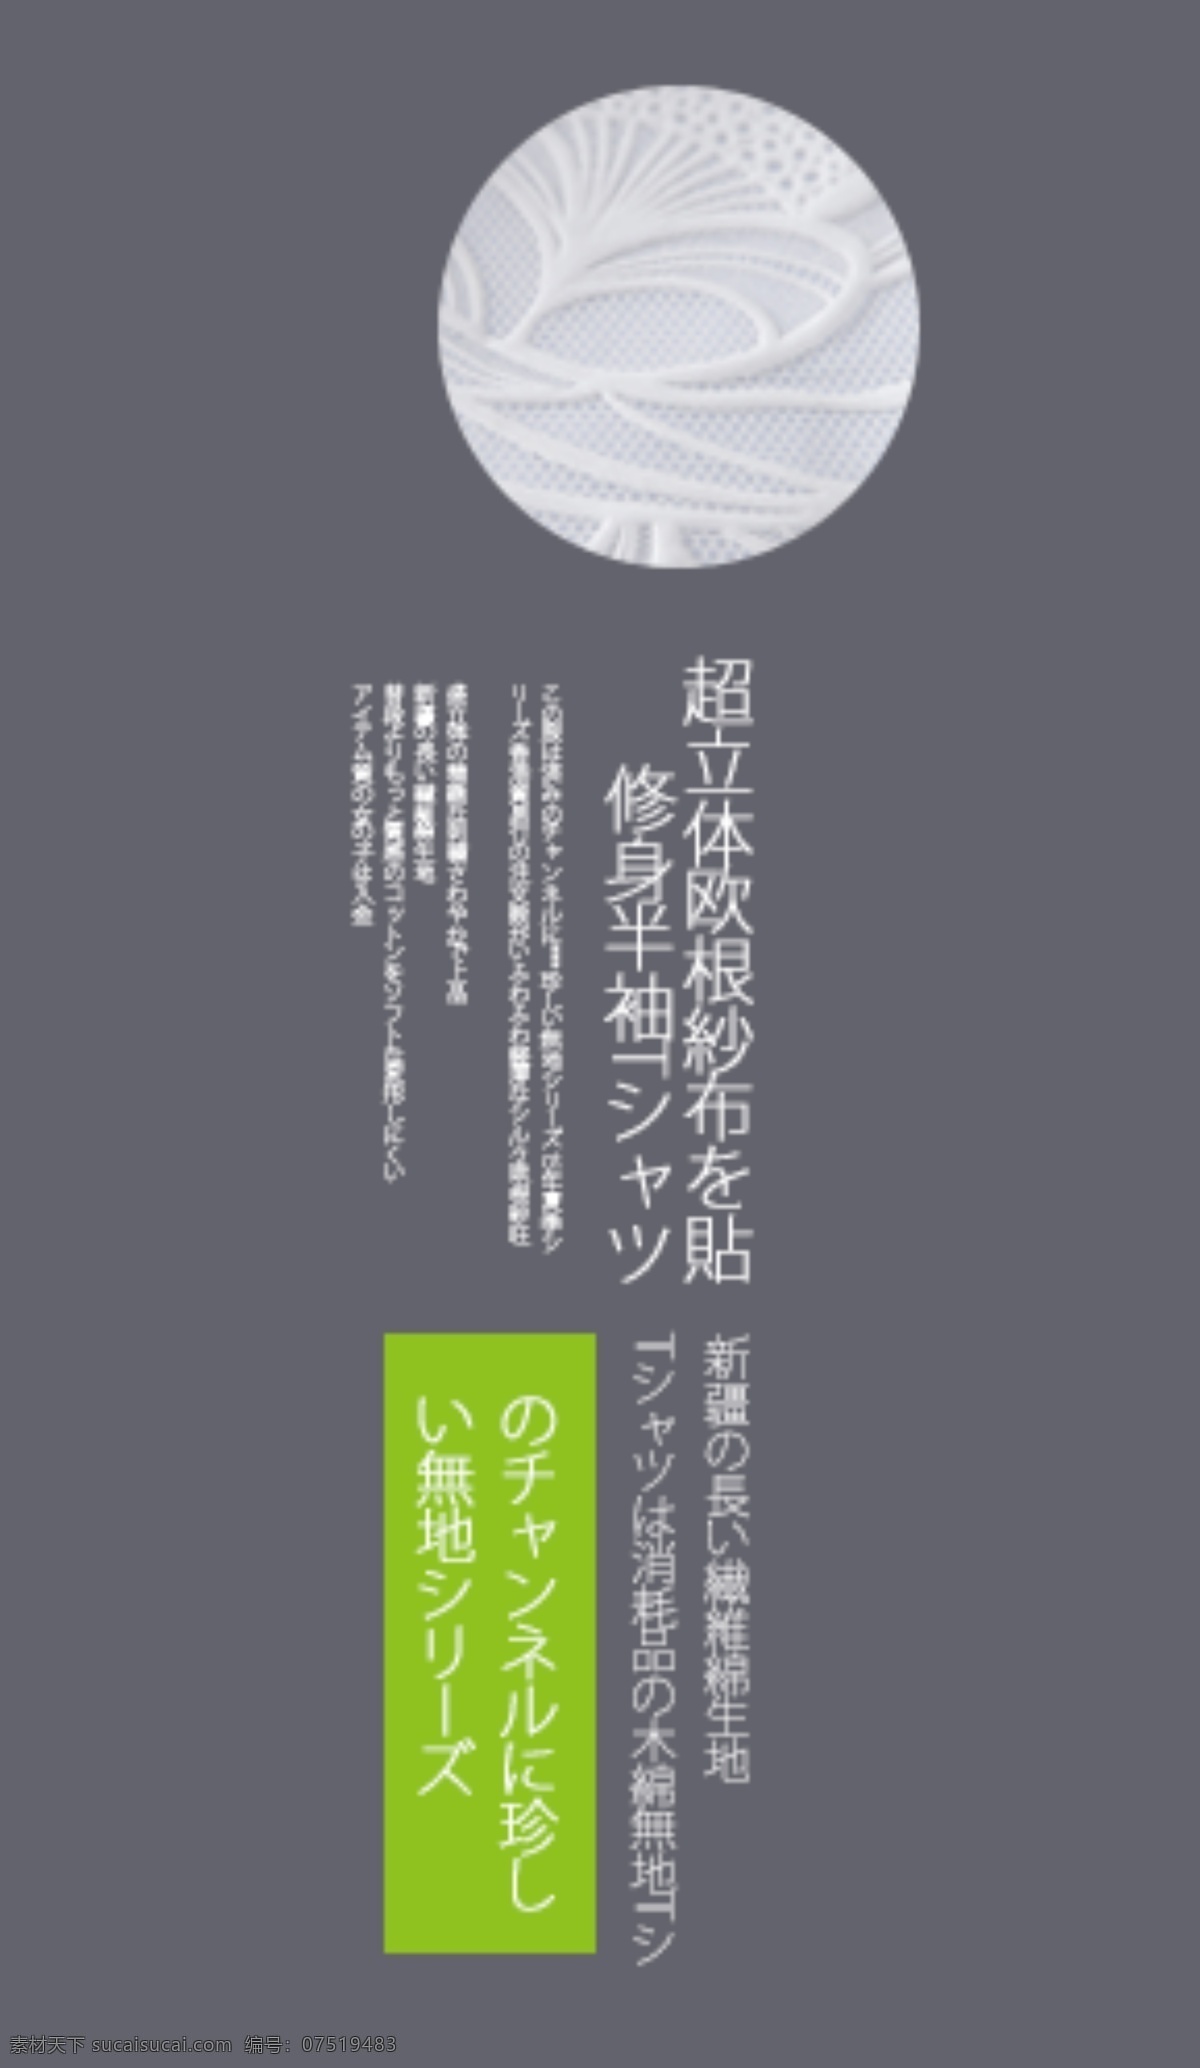 日本 排版 日文排版 排版样式 日文 文字排版 psd素材 排版设计 日系字体排版 清新 日系字体 清新字体 杂志排版 字体排版 日本排版 白色